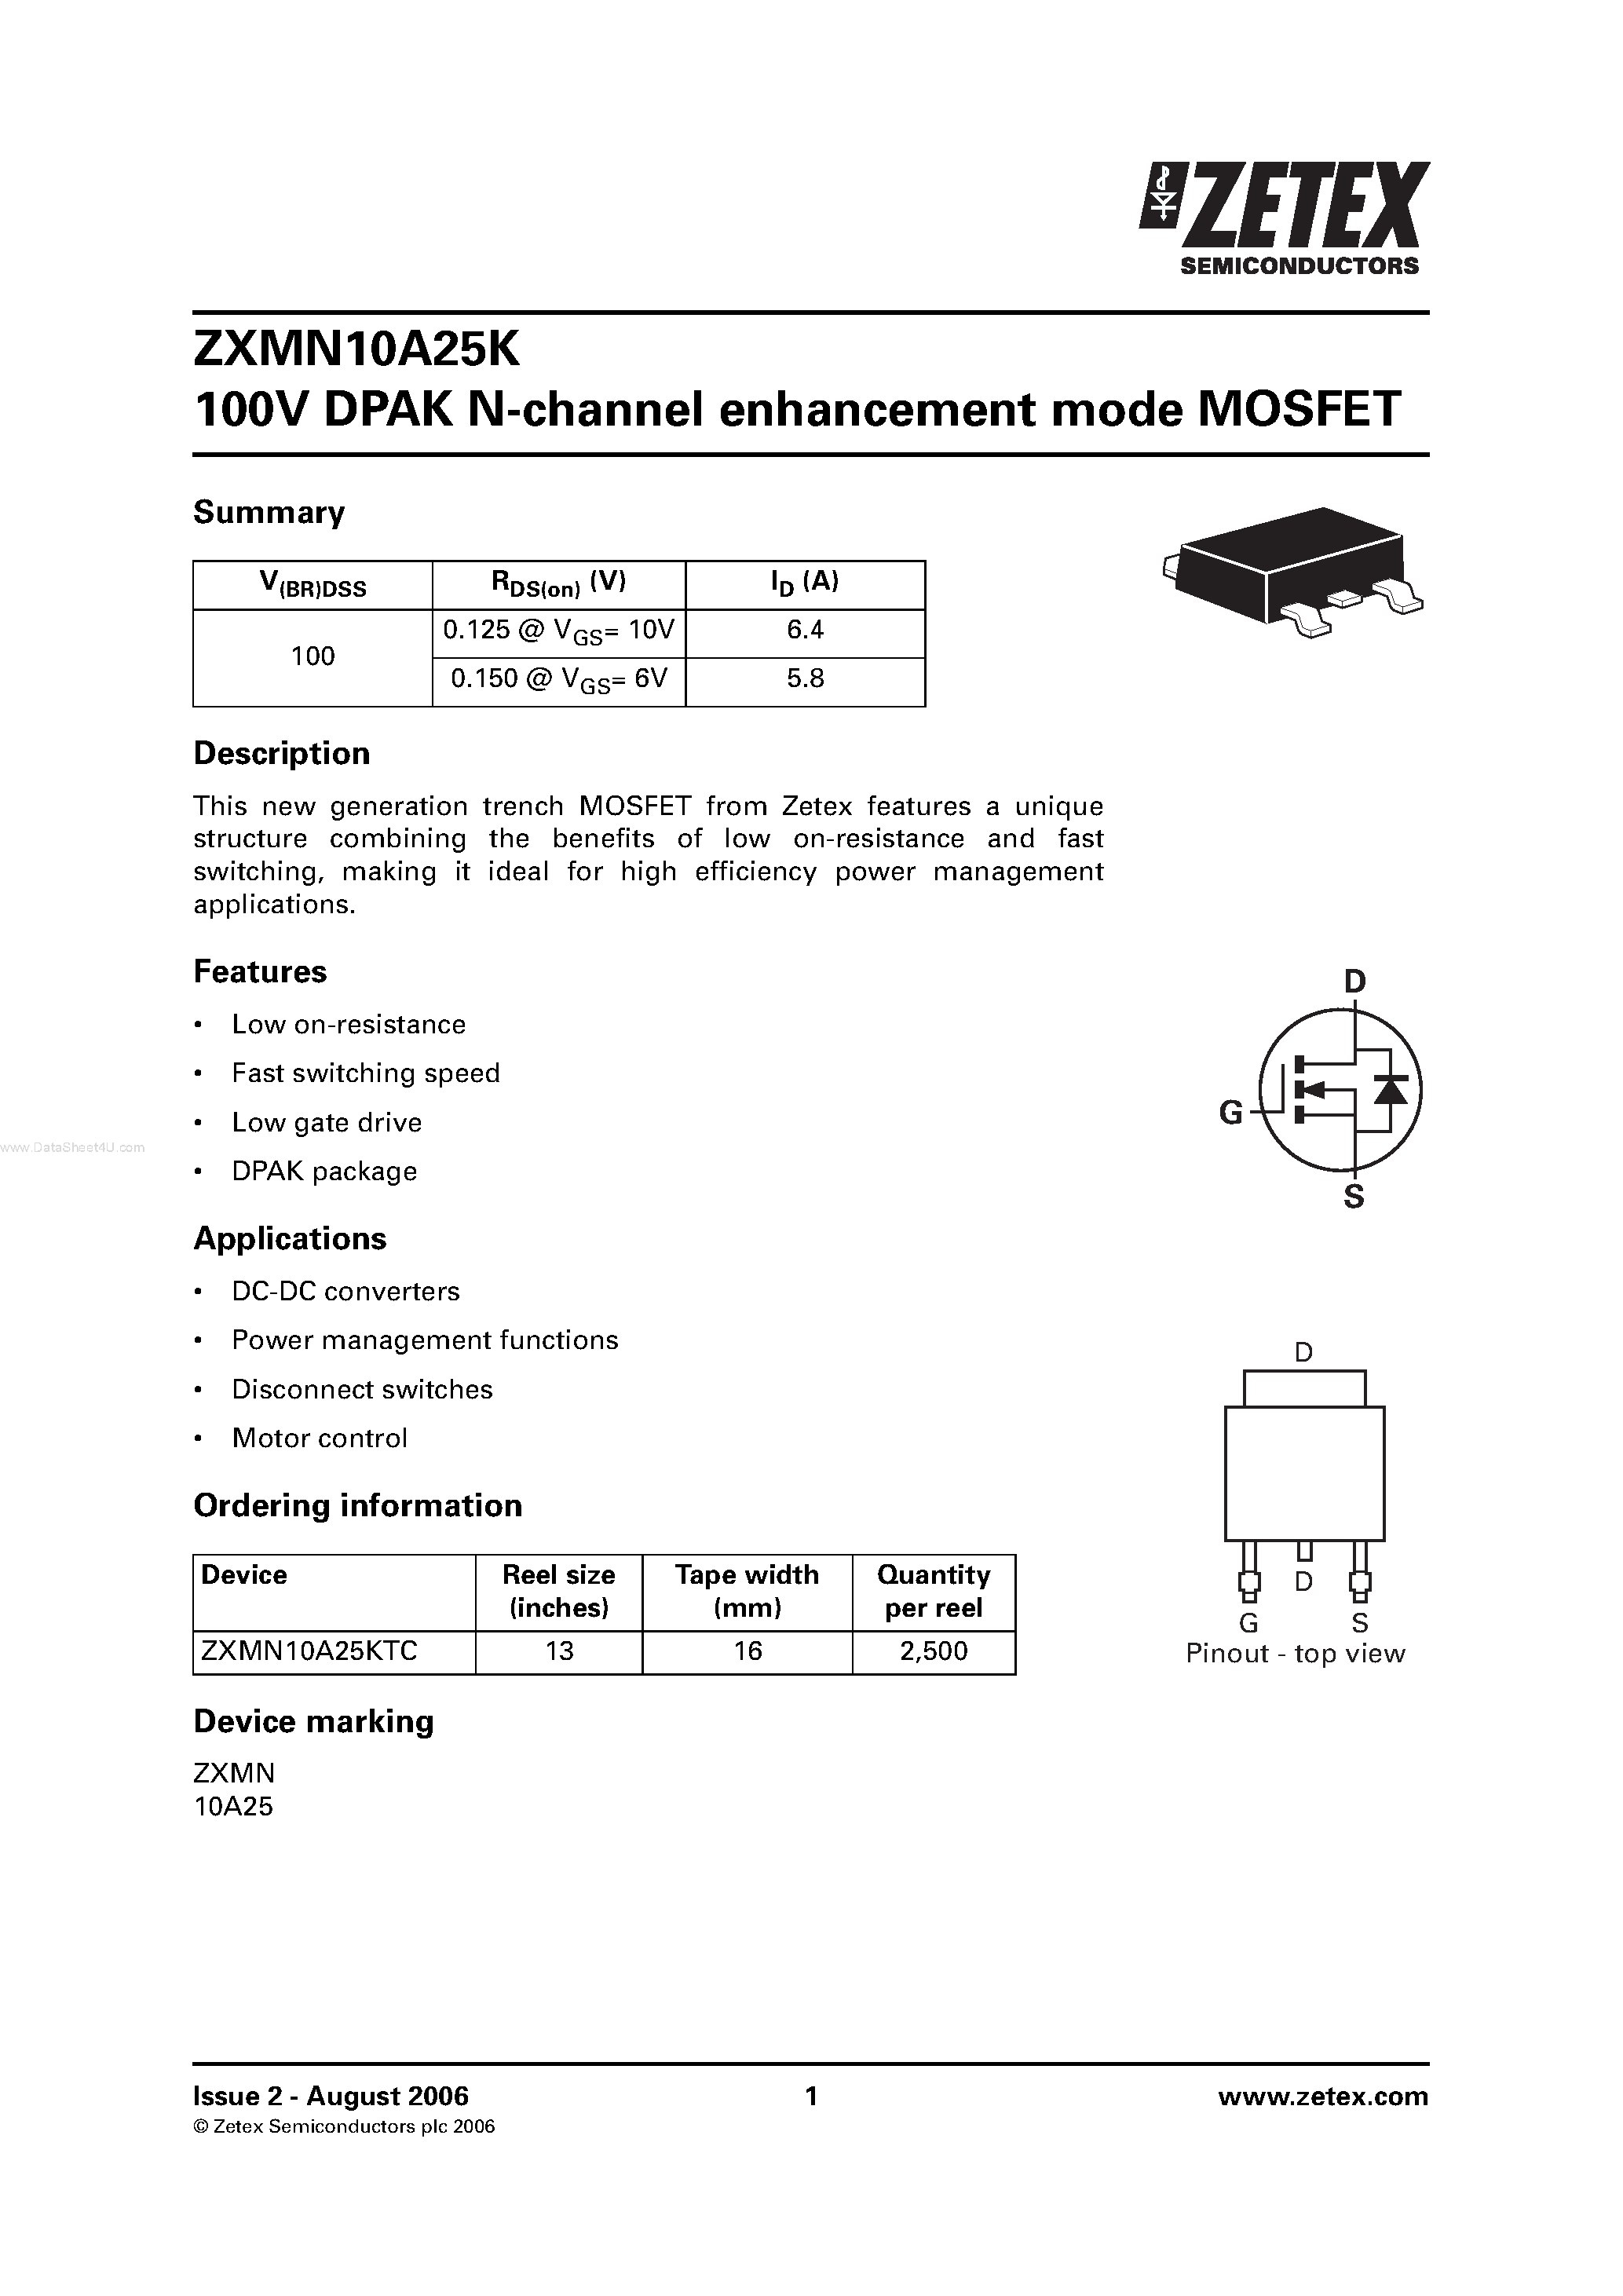 Datasheet ZXMN10A25K - 100V DPAK N-channel enhancement mode MOSFET page 1